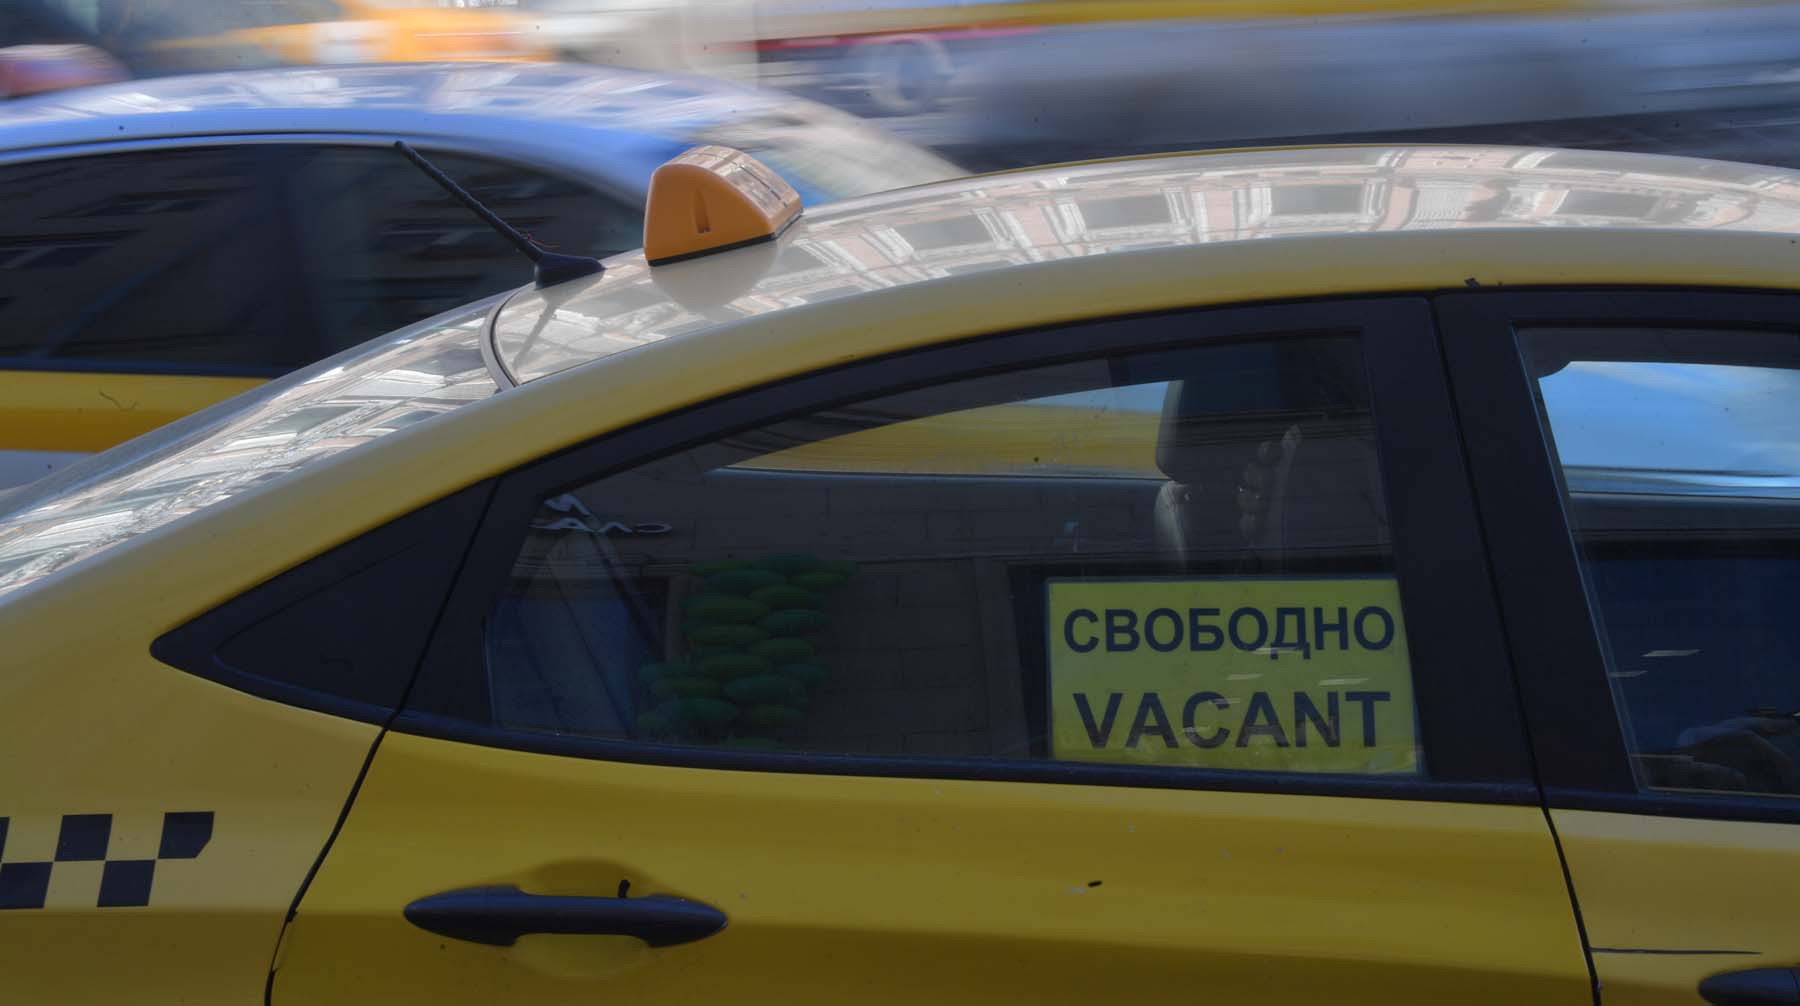 Dailystorm - Цены на такси в России выросли более чем наполовину за полгода